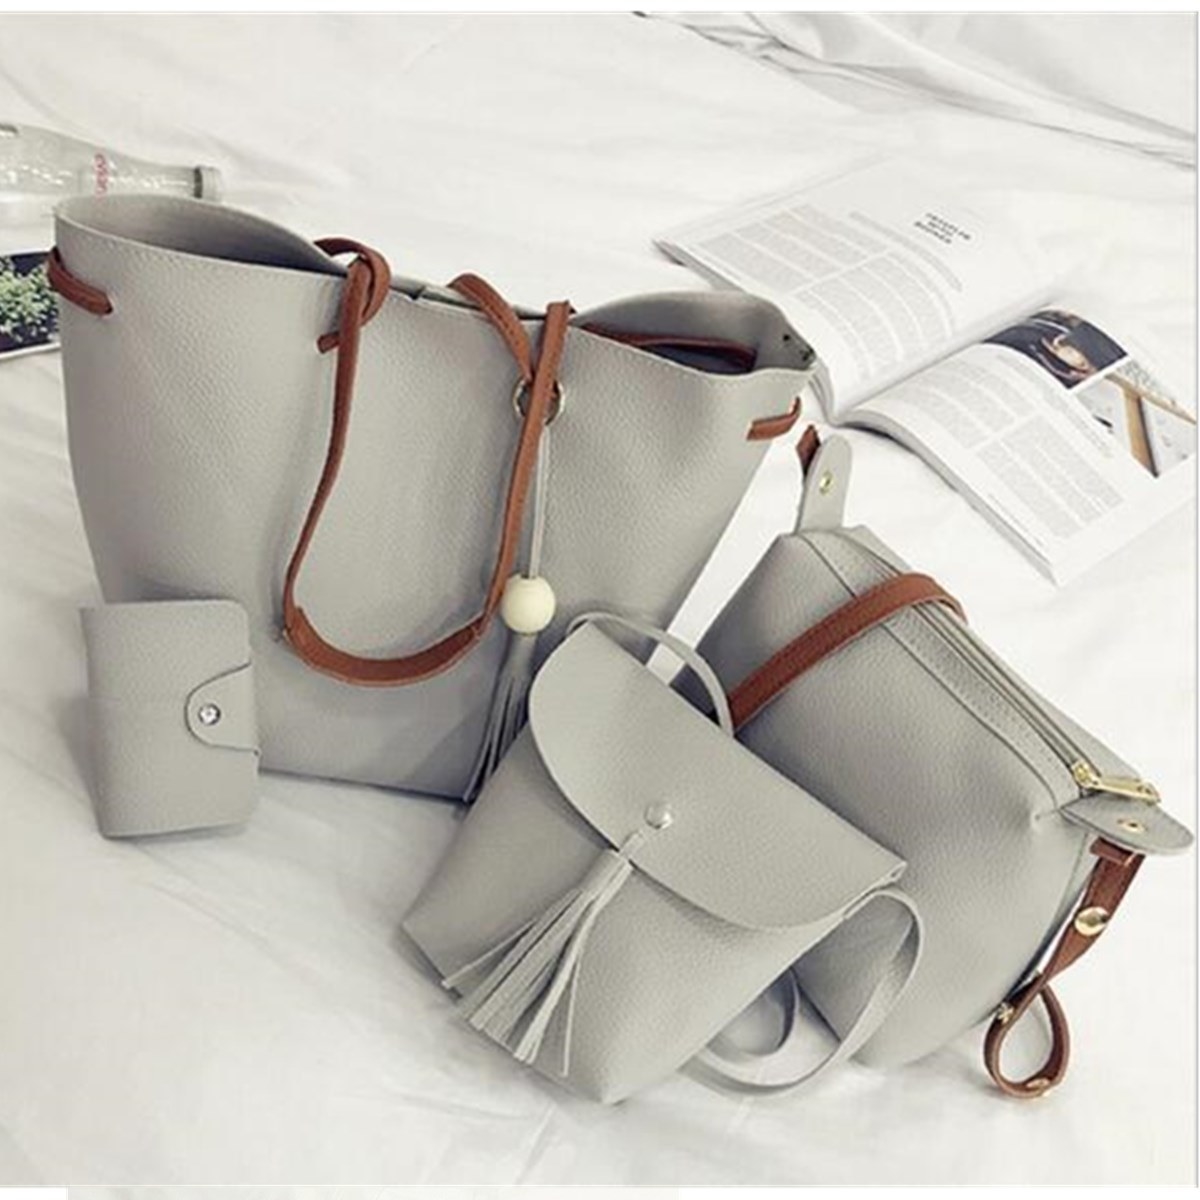 34 Of The Best Leather Bags You Can Get On Amazon | Fendi bolsos, Carteras,  Bolsos de cuero artesanales